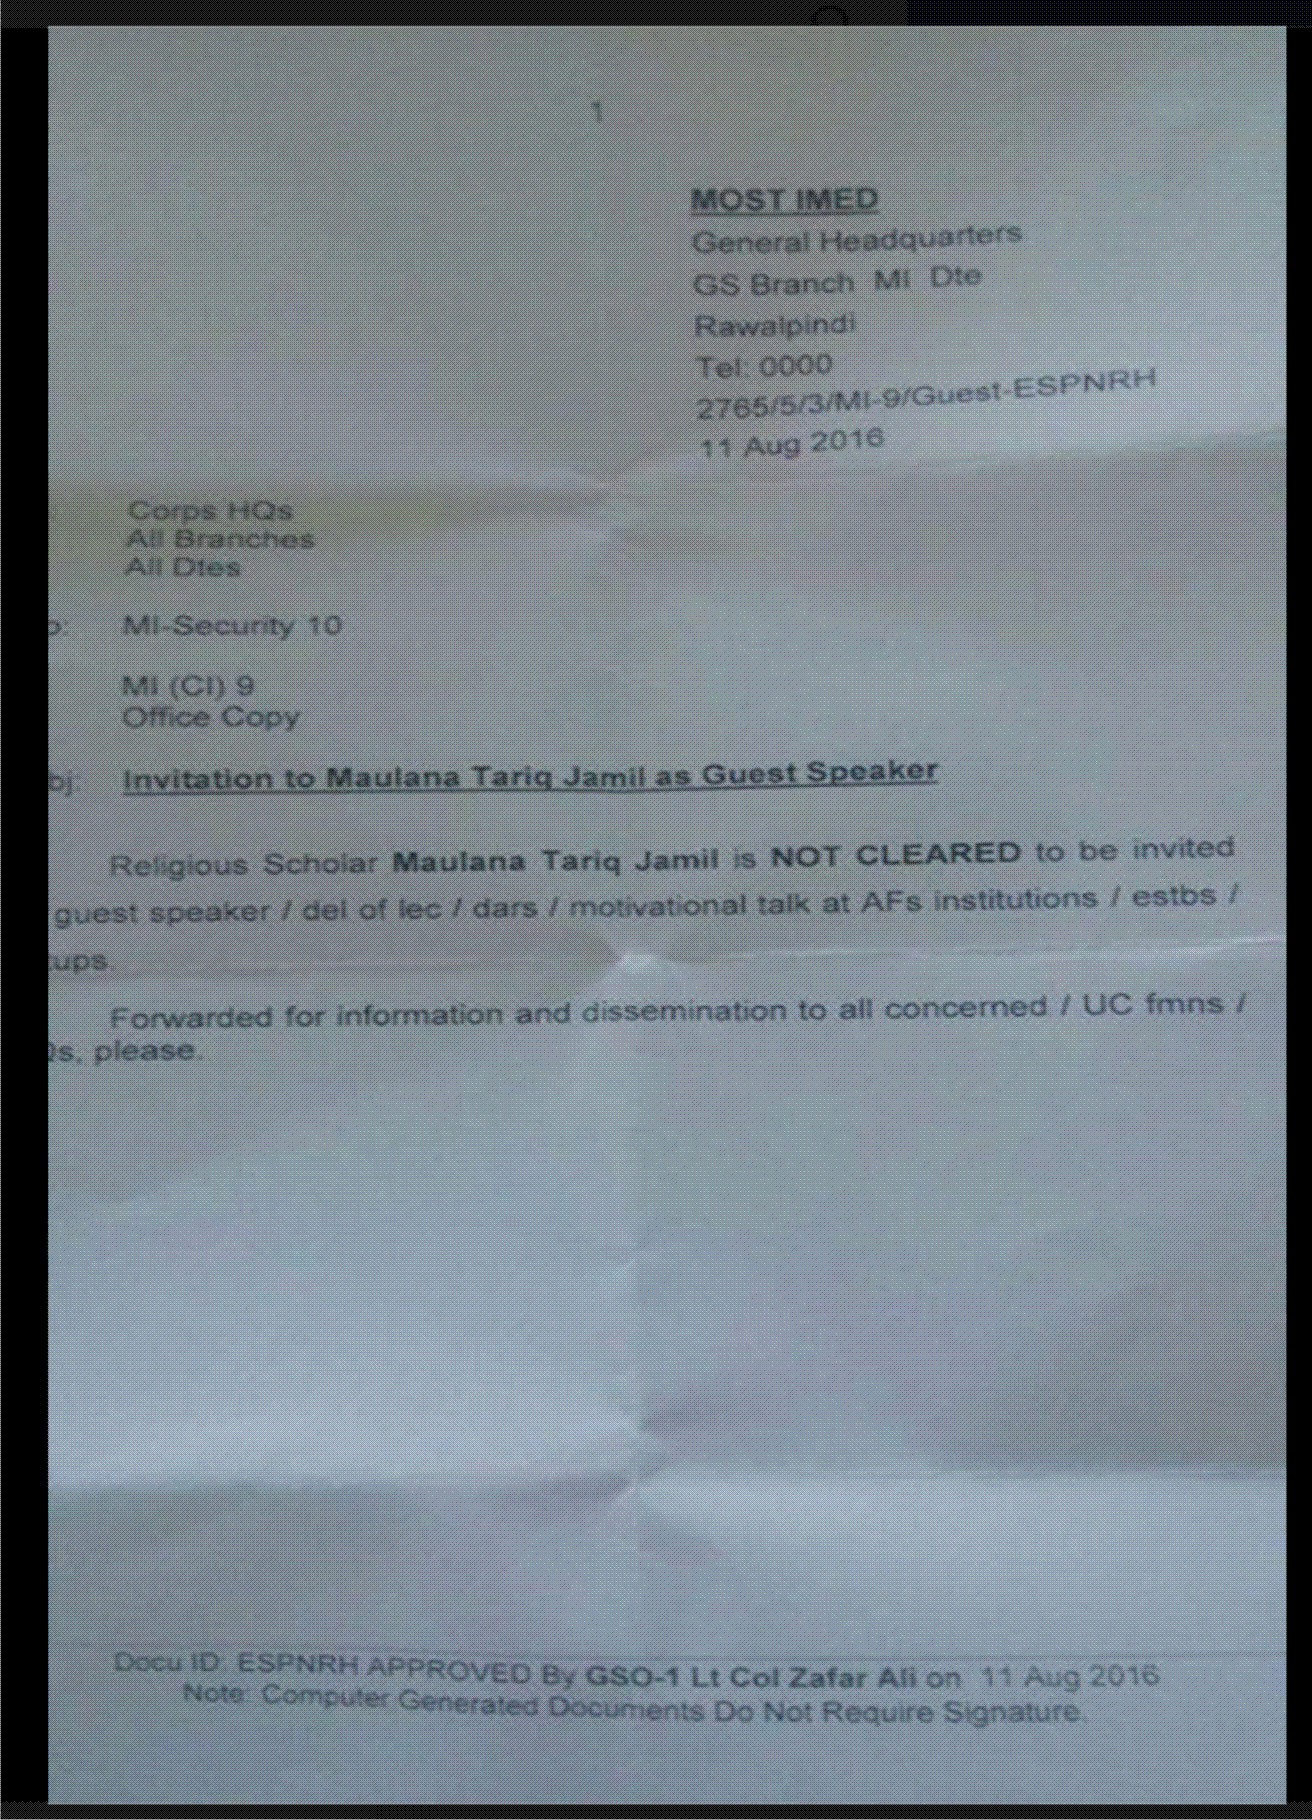 پاک فوج کی طرف سے معروف مذہبی سکالر مولانا طارق جمیل پر پابندی عائد